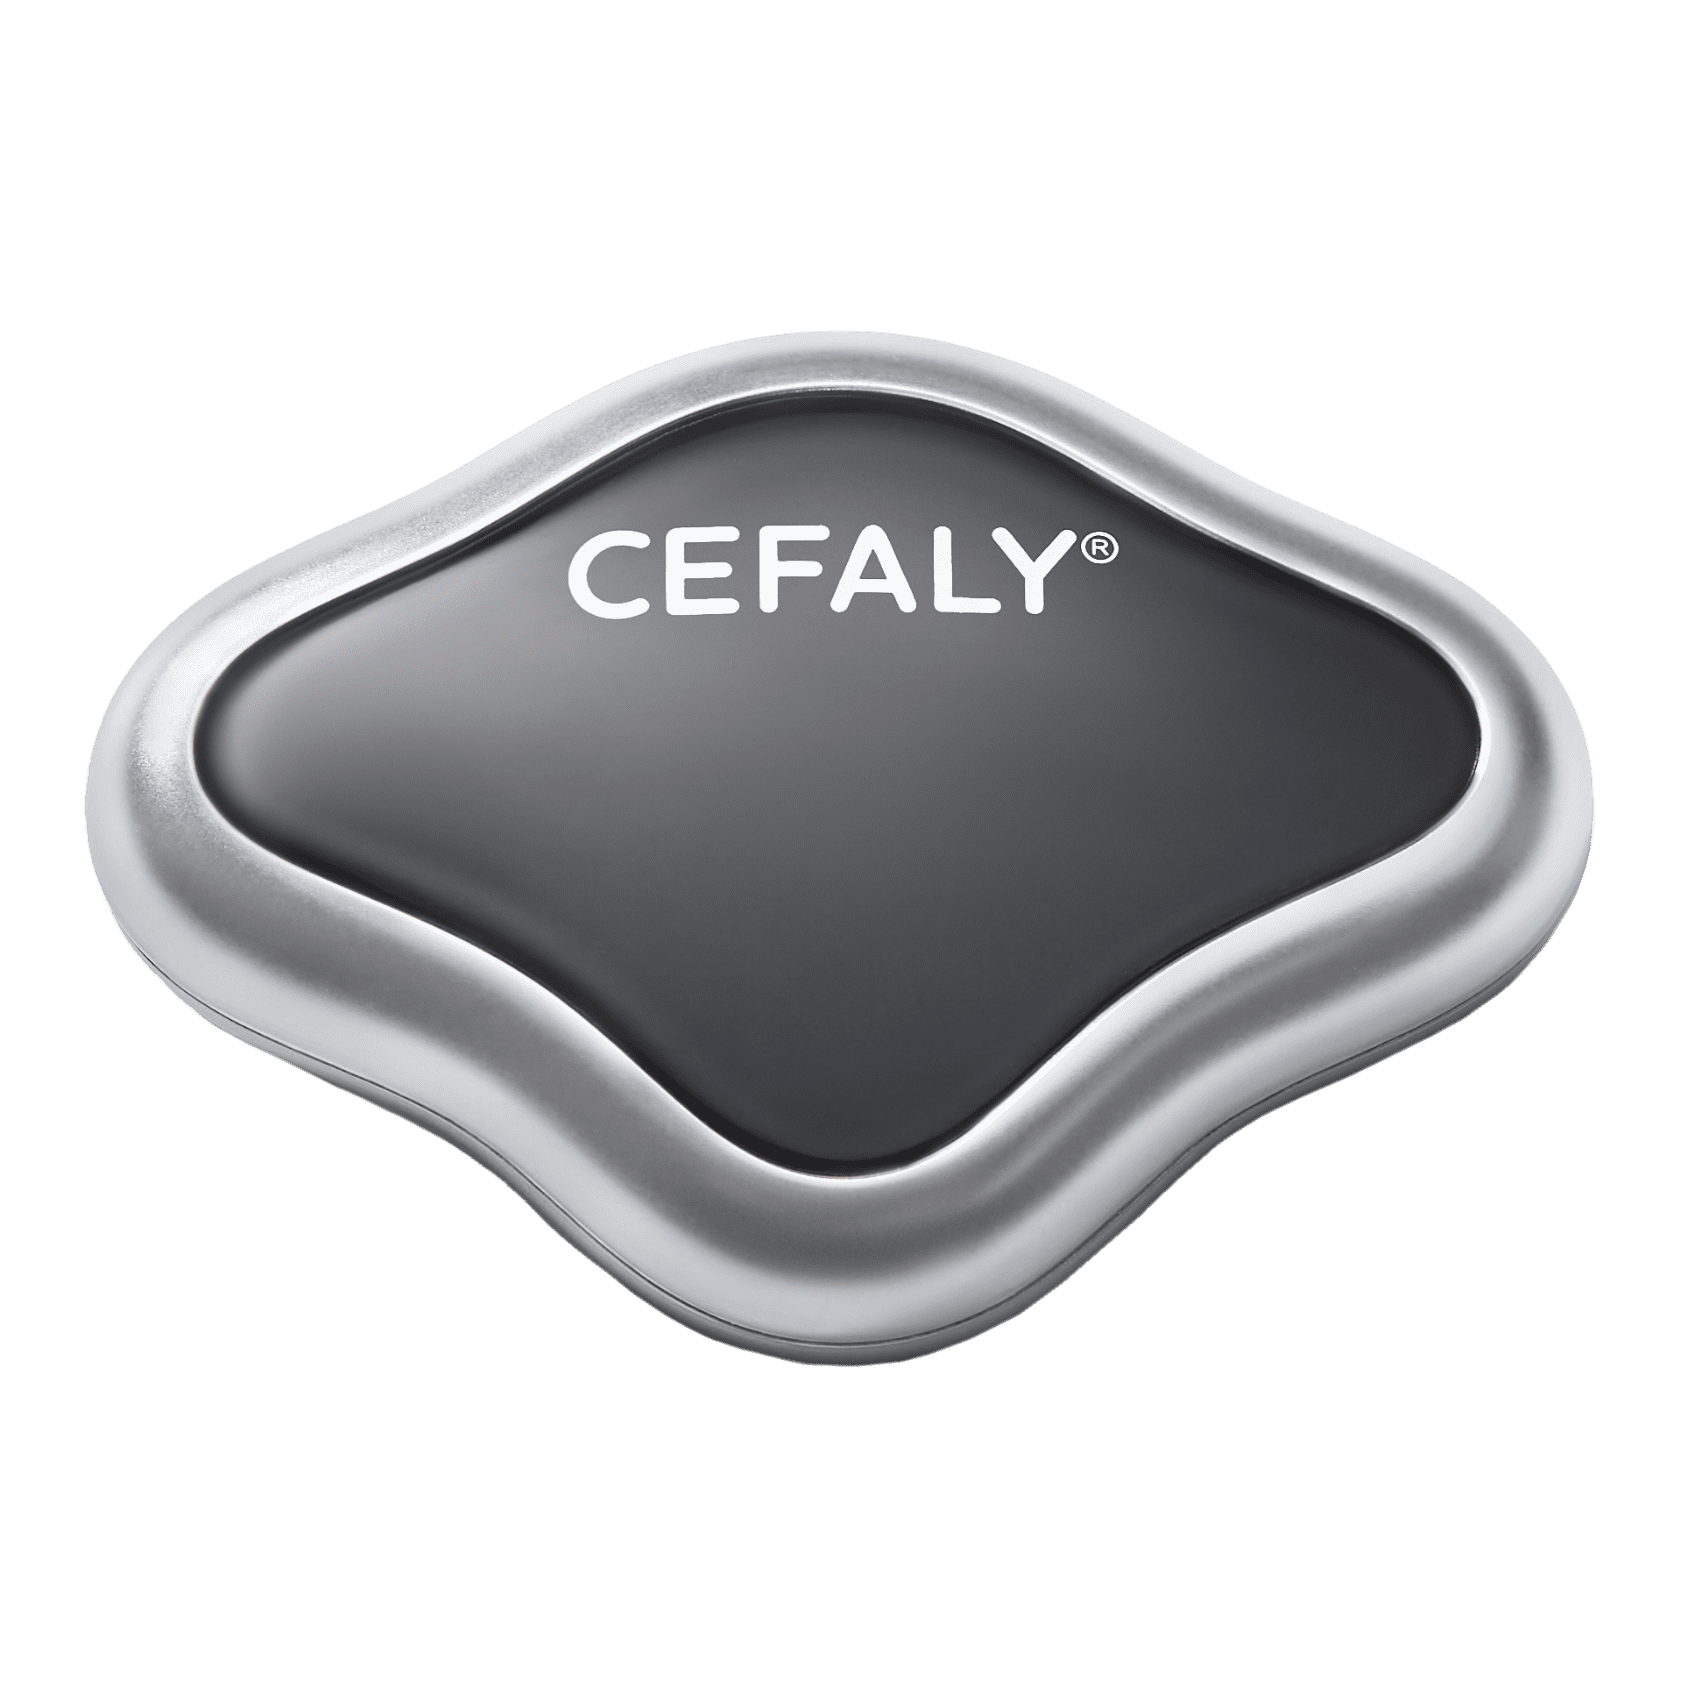 comment fonctionne le dispositif CEFALY?